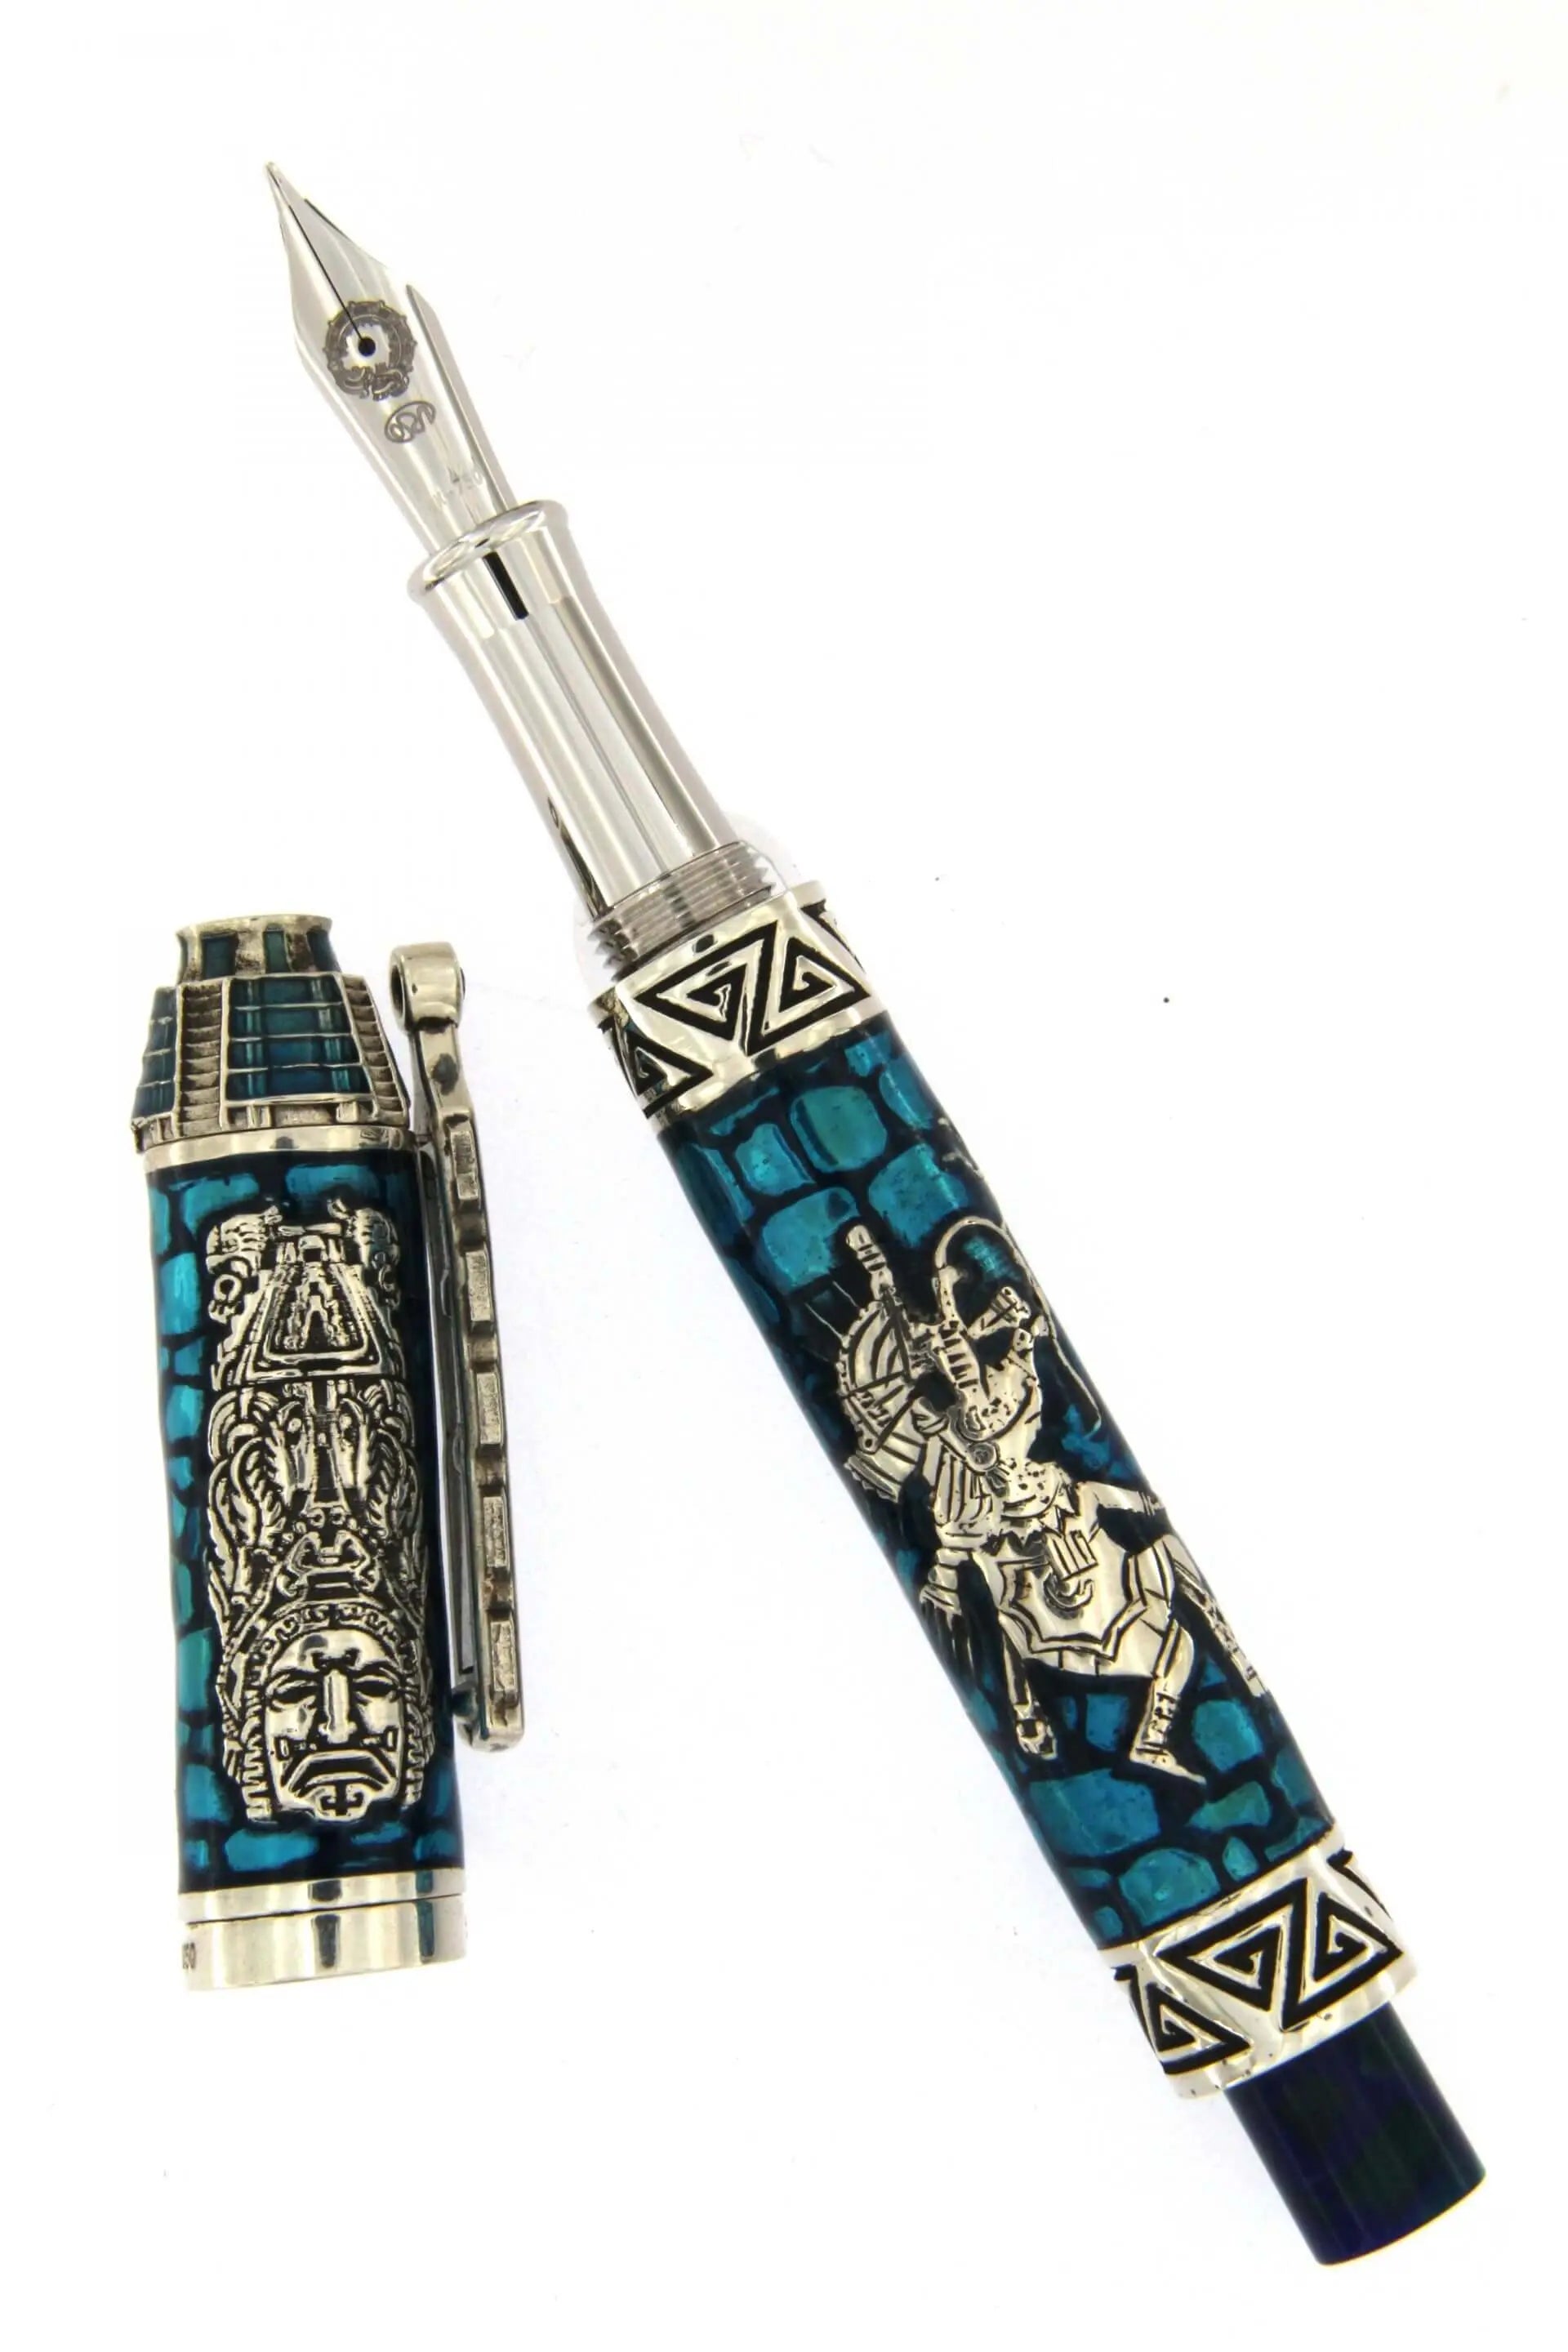 Quetzalcoatl Fountain Pen Silver blue